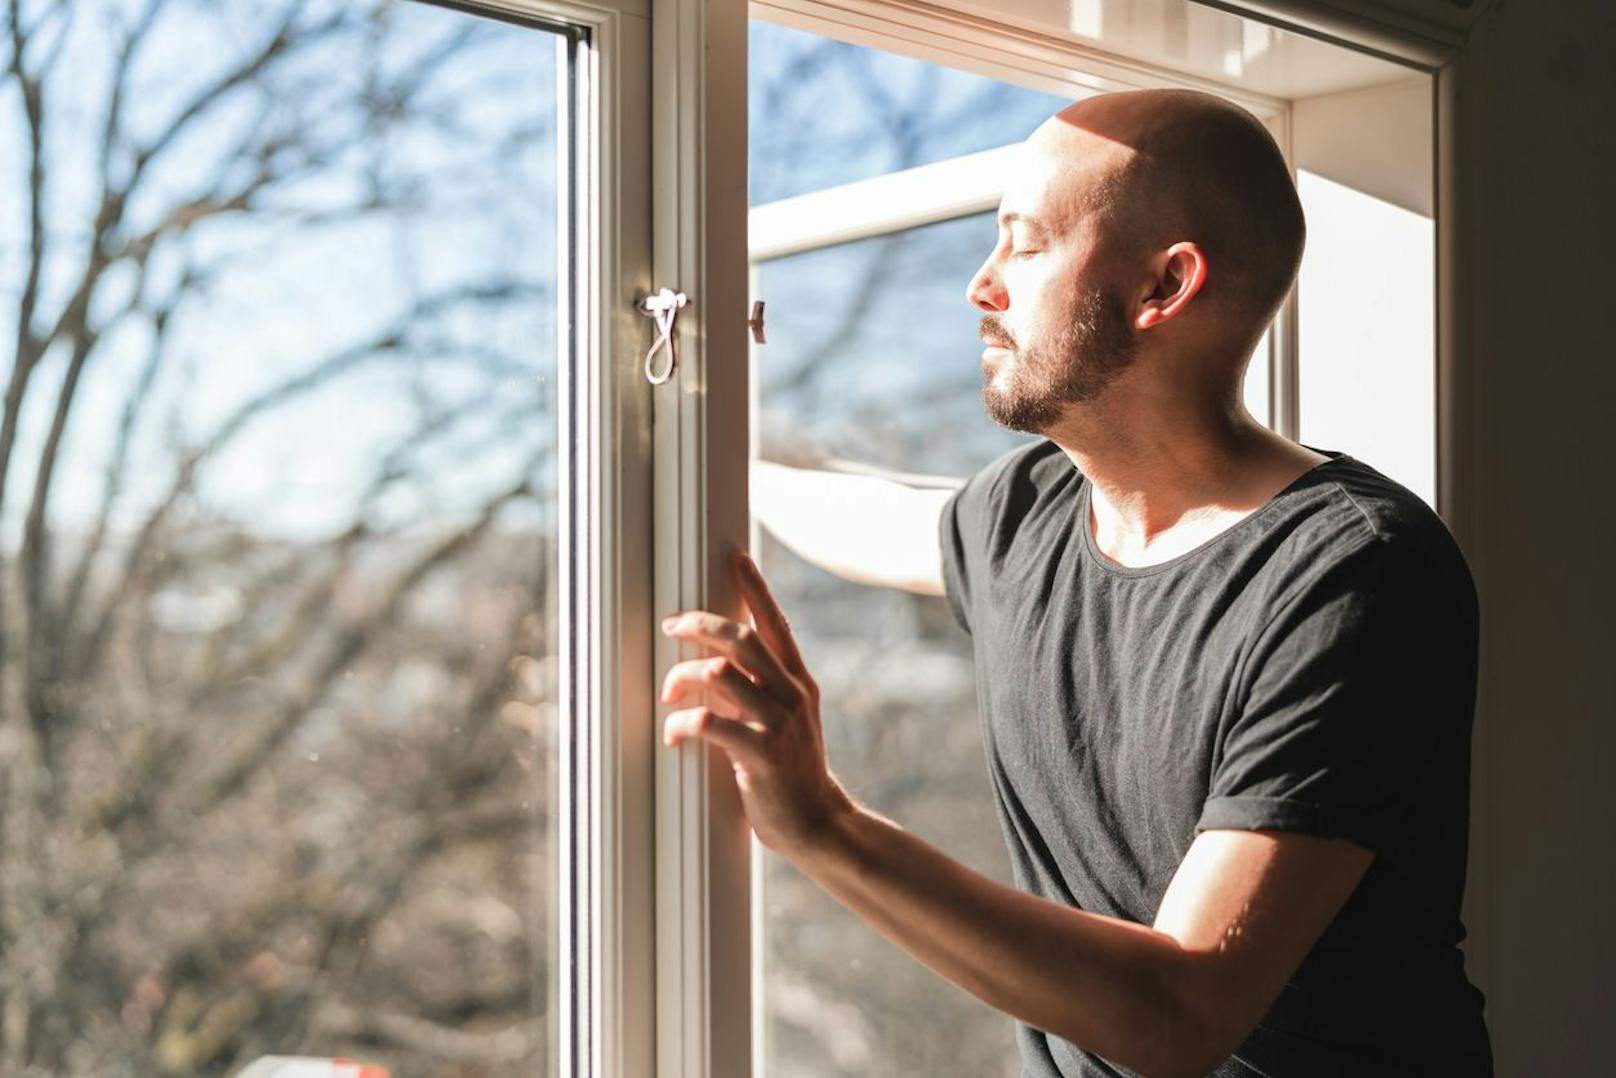 Stickige und schwere Luft unterstützt dich nicht dabei wach und munter zu bleiben. Öffne deine Fenster und lasse ruhig den kühlen Wind wehen.